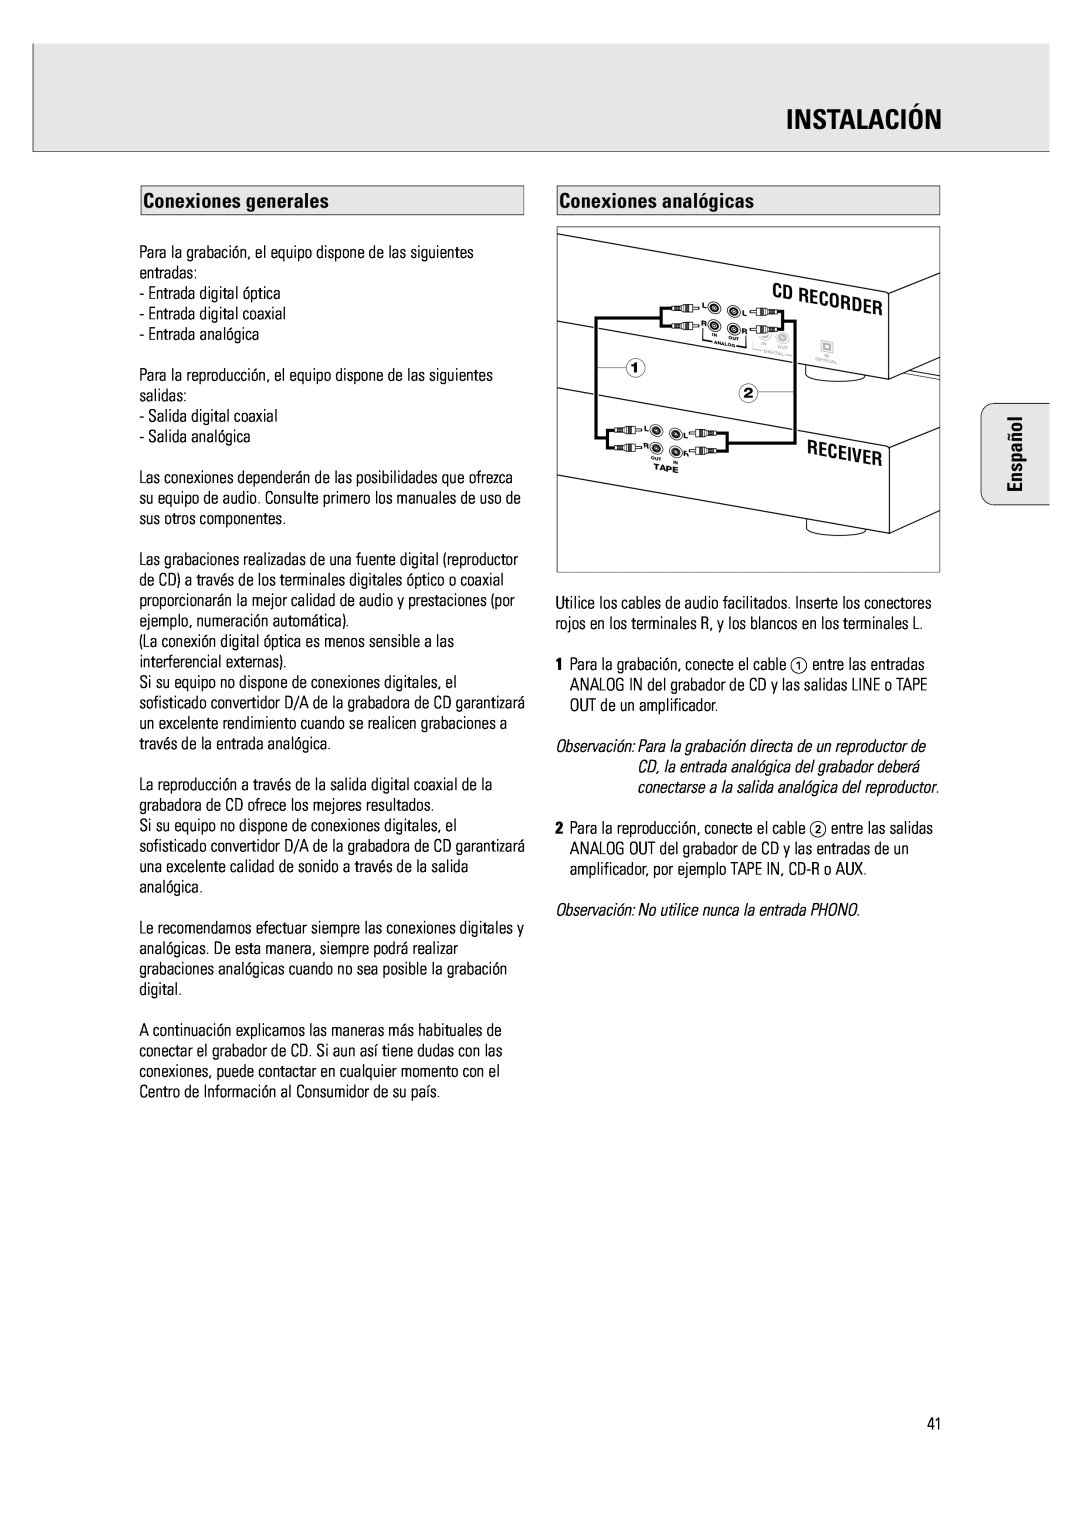 Philips CDR 760 manual Instalación, Conexiones generales, Enspañol 